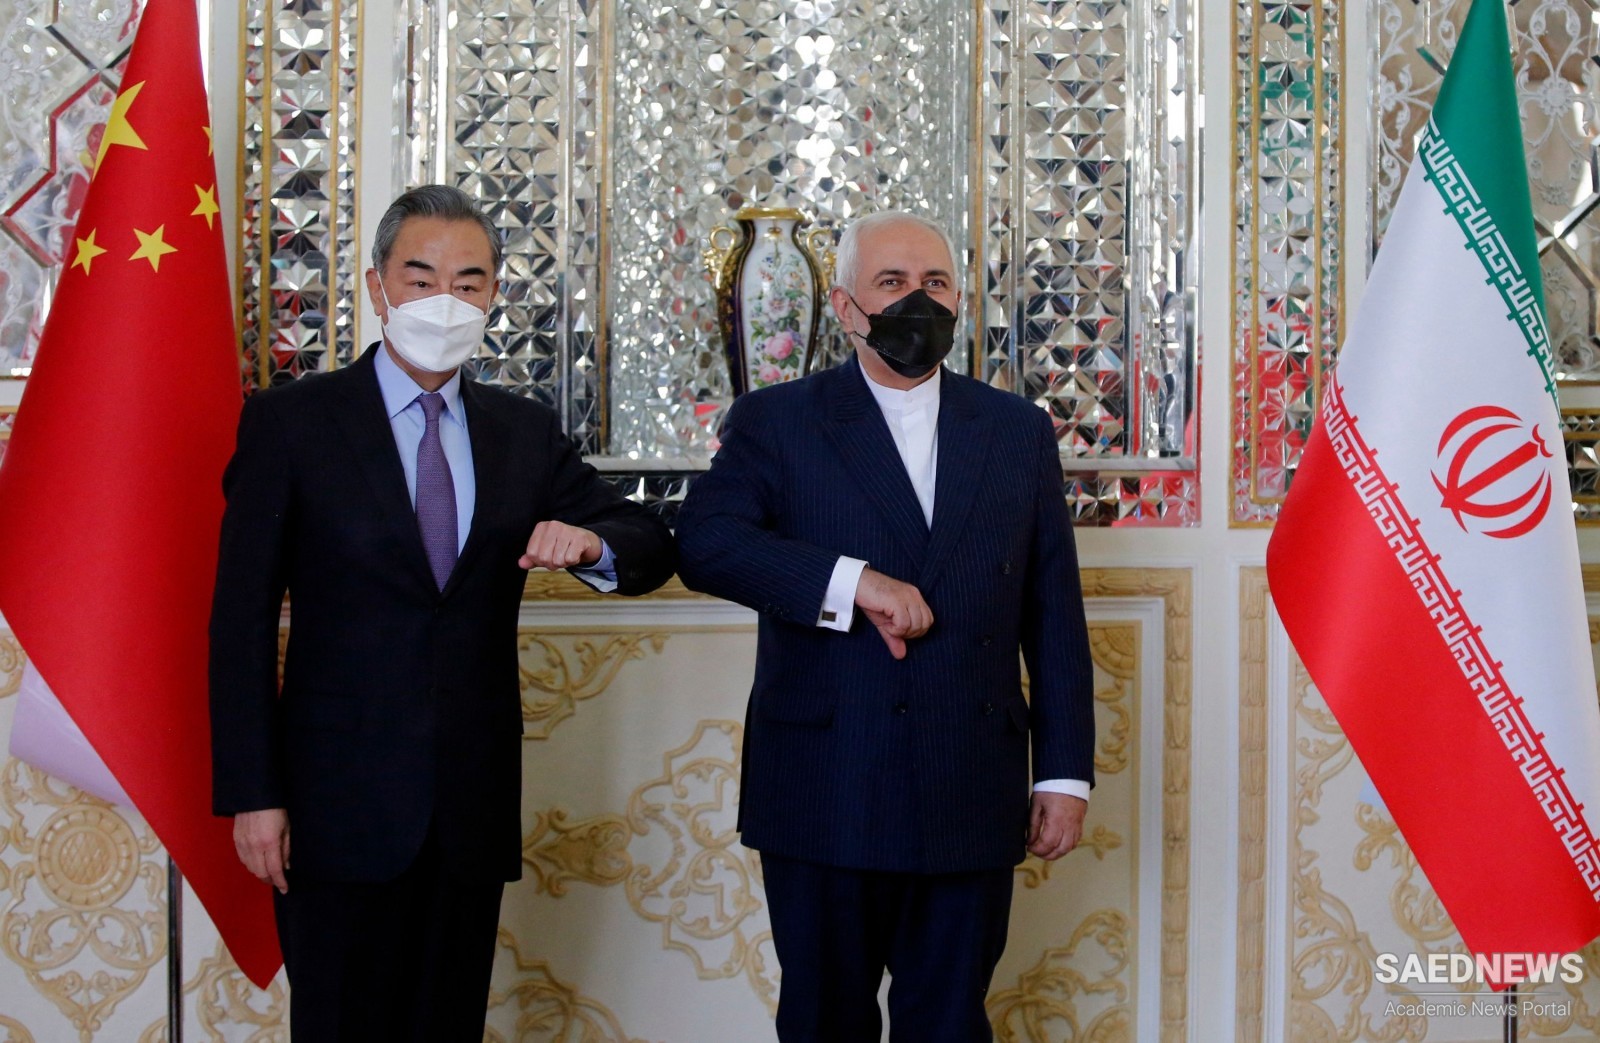 चीन-ईरान का नया युग 25 साल की व्यापक रणनीतिक साझेदारी से शुरू हुआ